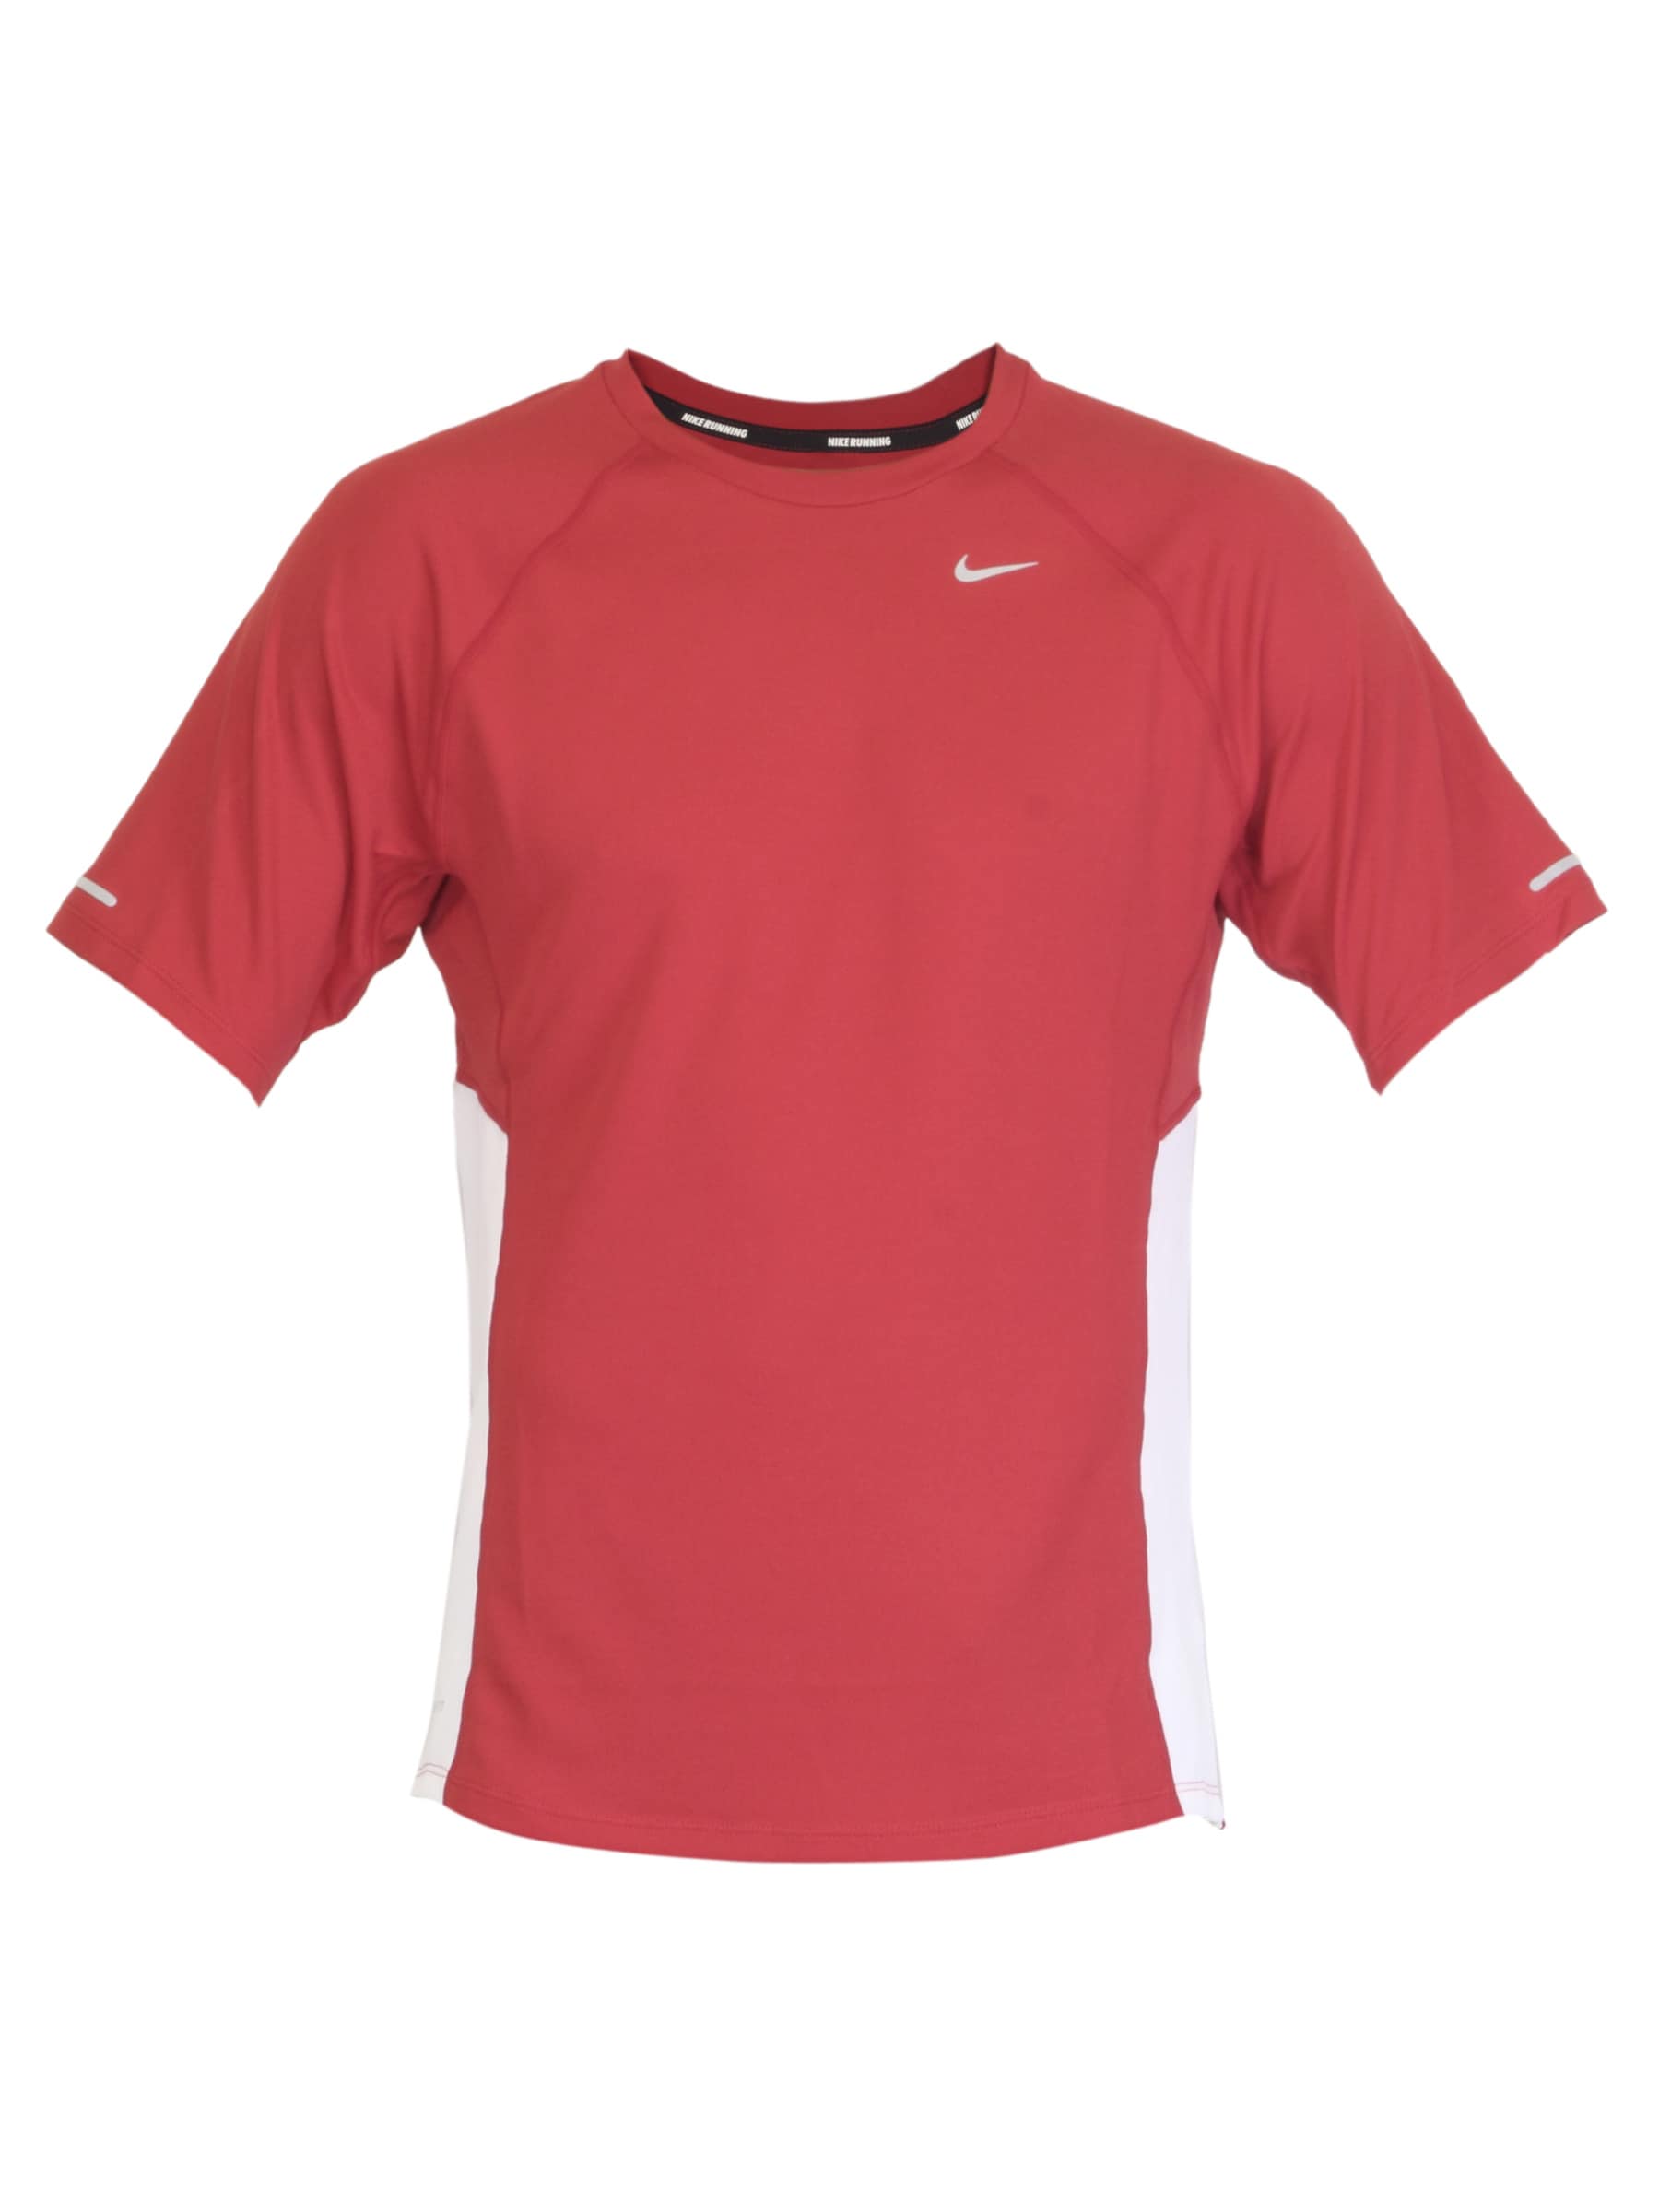 Nike Men Running Red Jersey